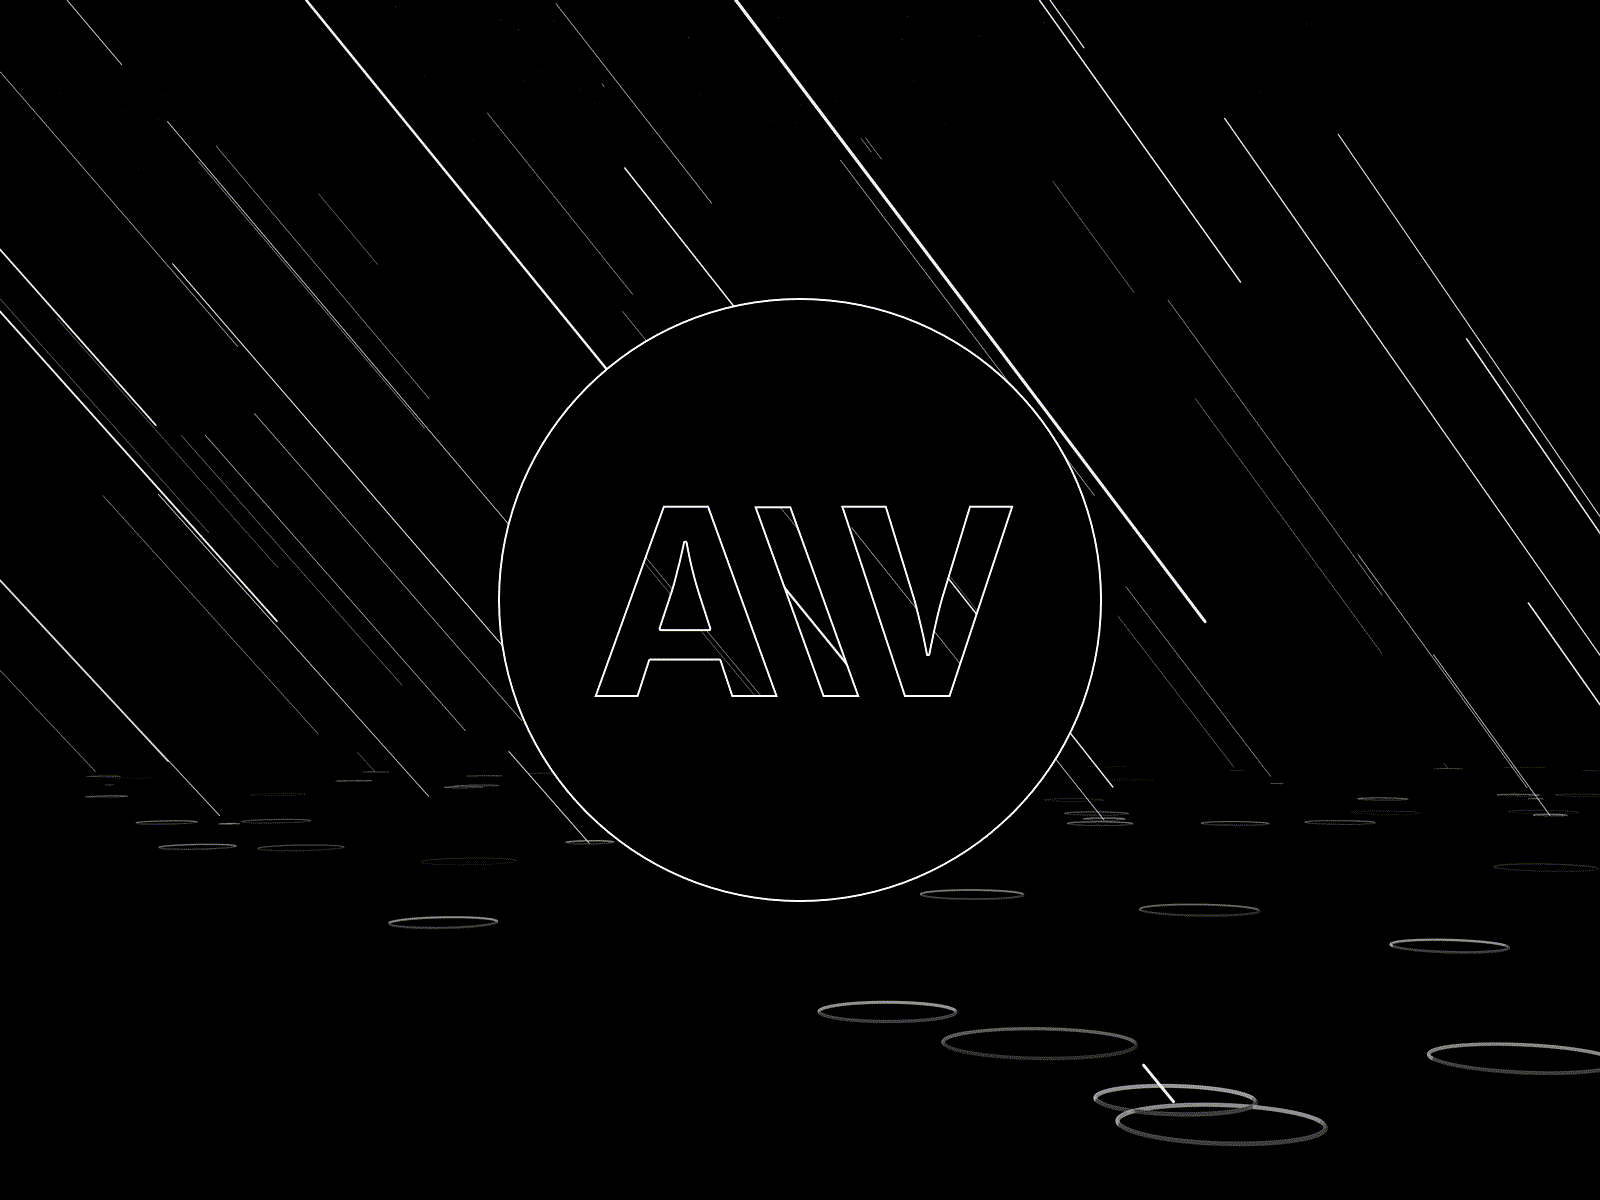 Adrift animated type animation design logo motion graphics type